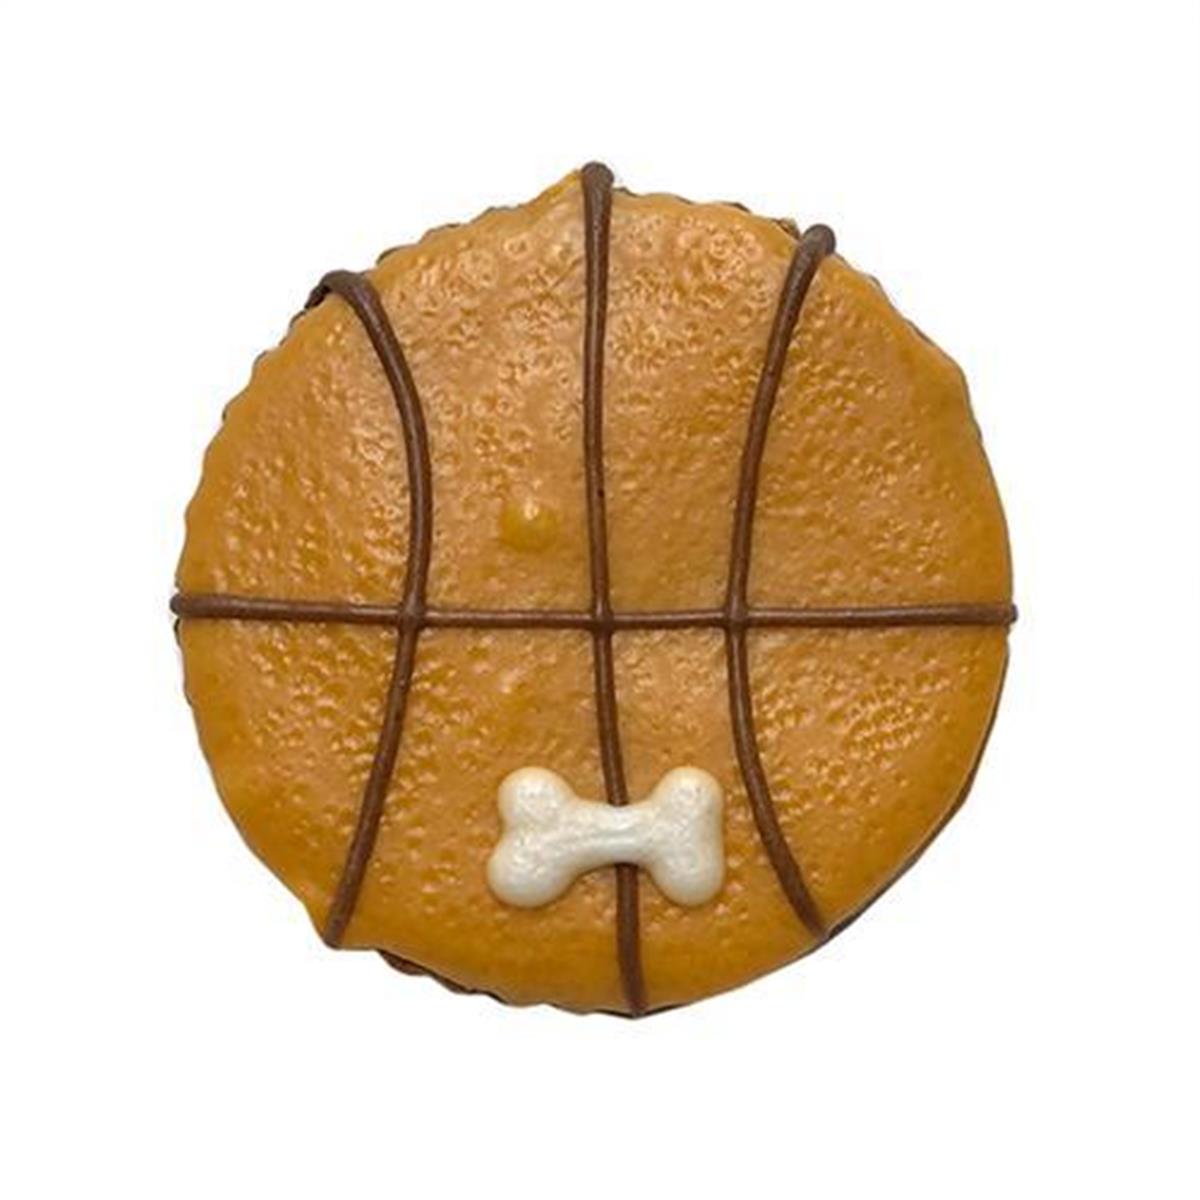 Bkbask 2.5 In. Basket Ball - Case Of 12